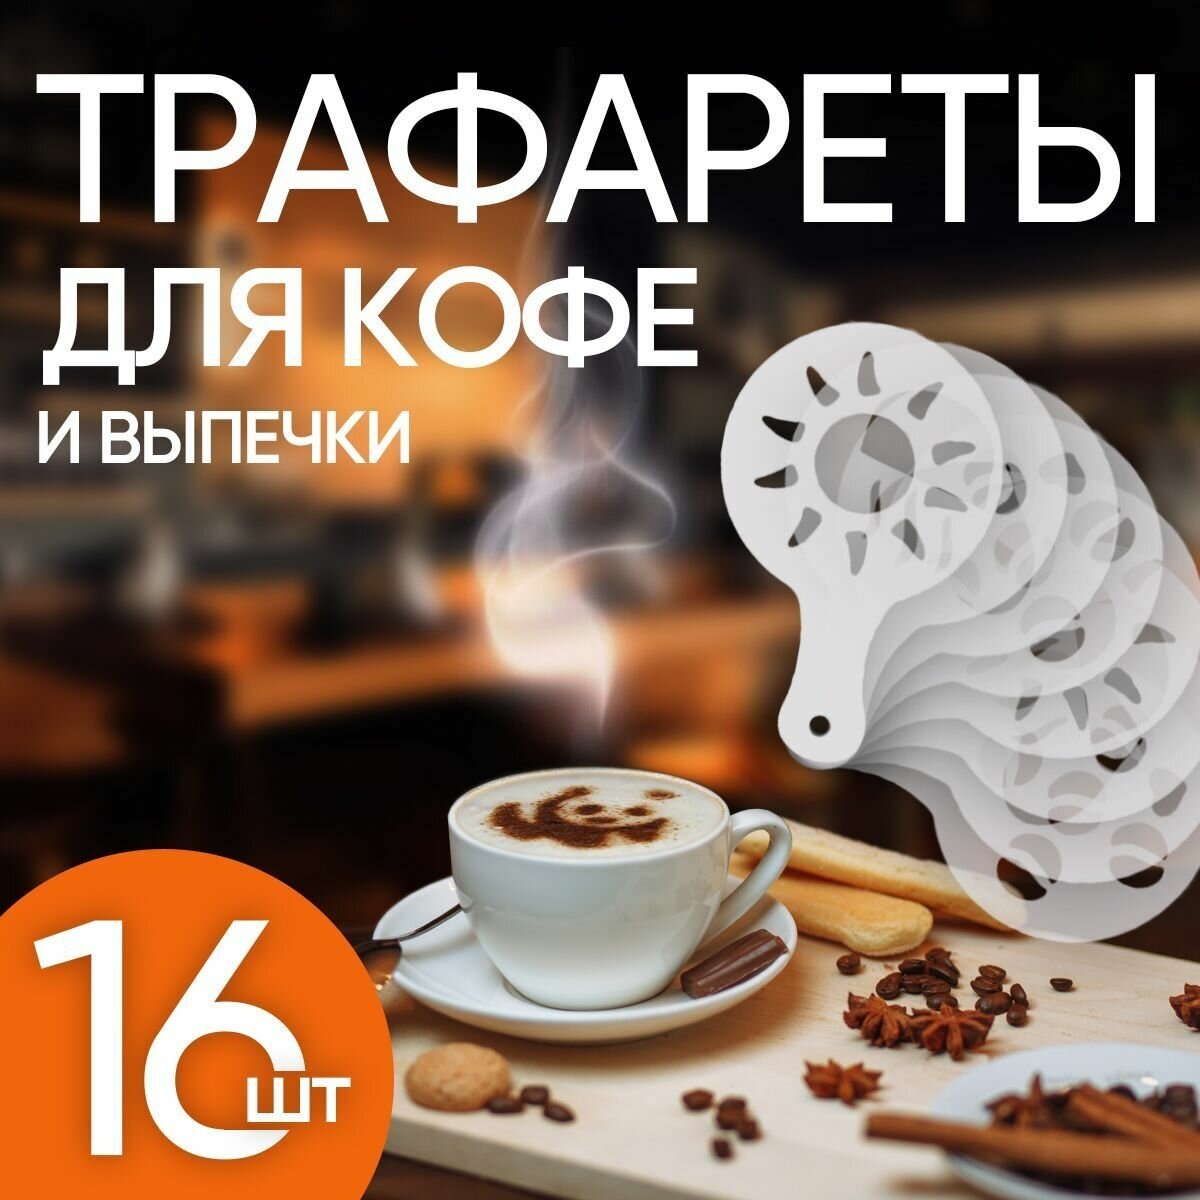 16шт - Трафареты для кофе и выпечки (Пластик)